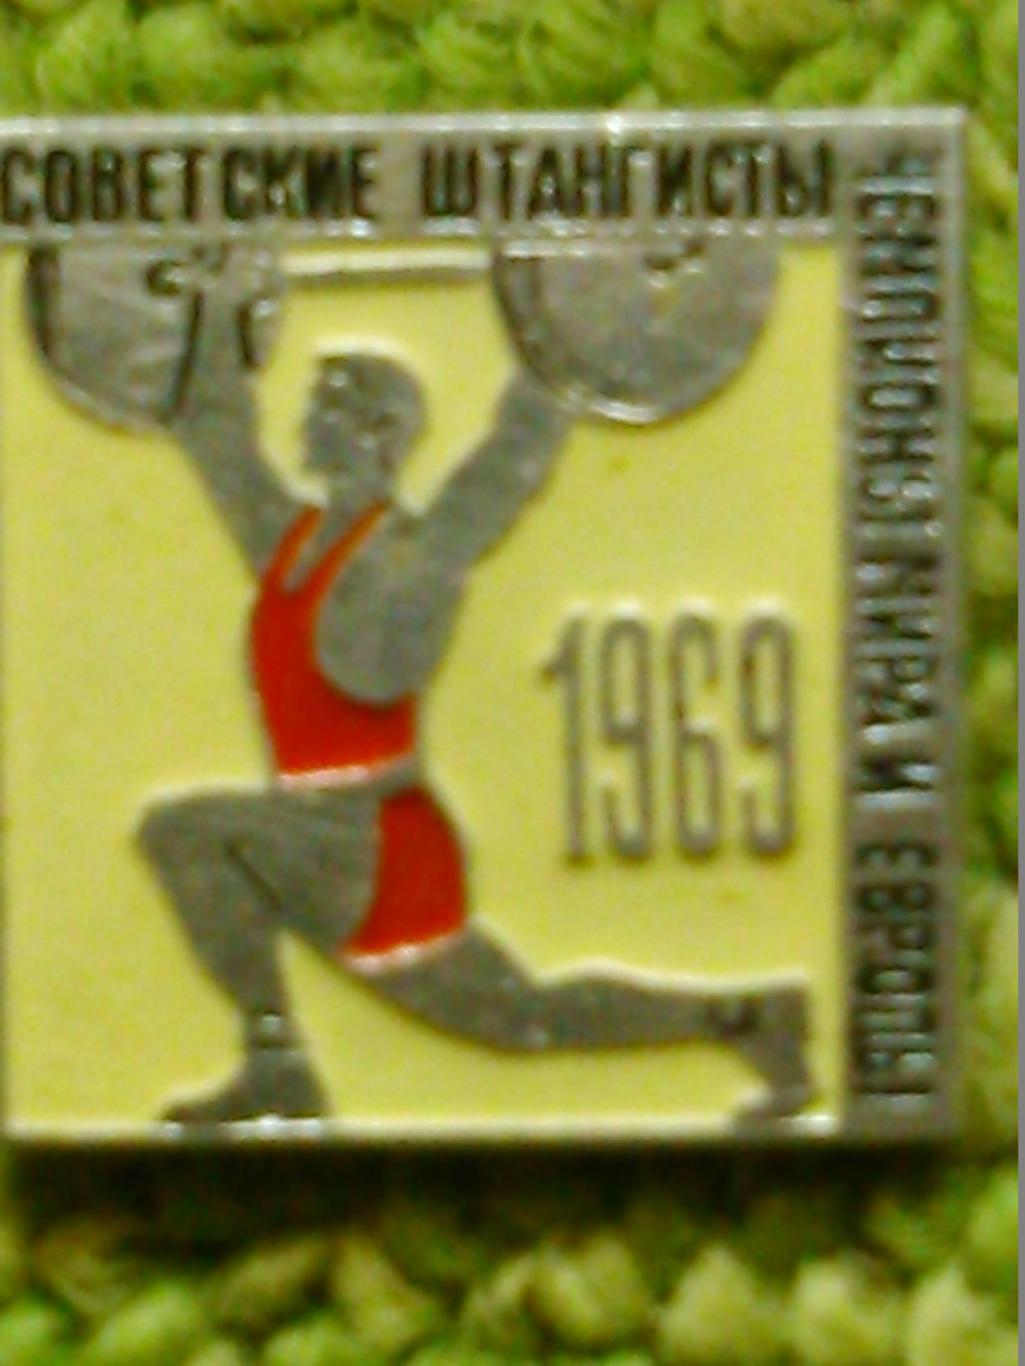 Советские штангисты чемпионы Мира Европы 1969. Оптом скидки до 46%!